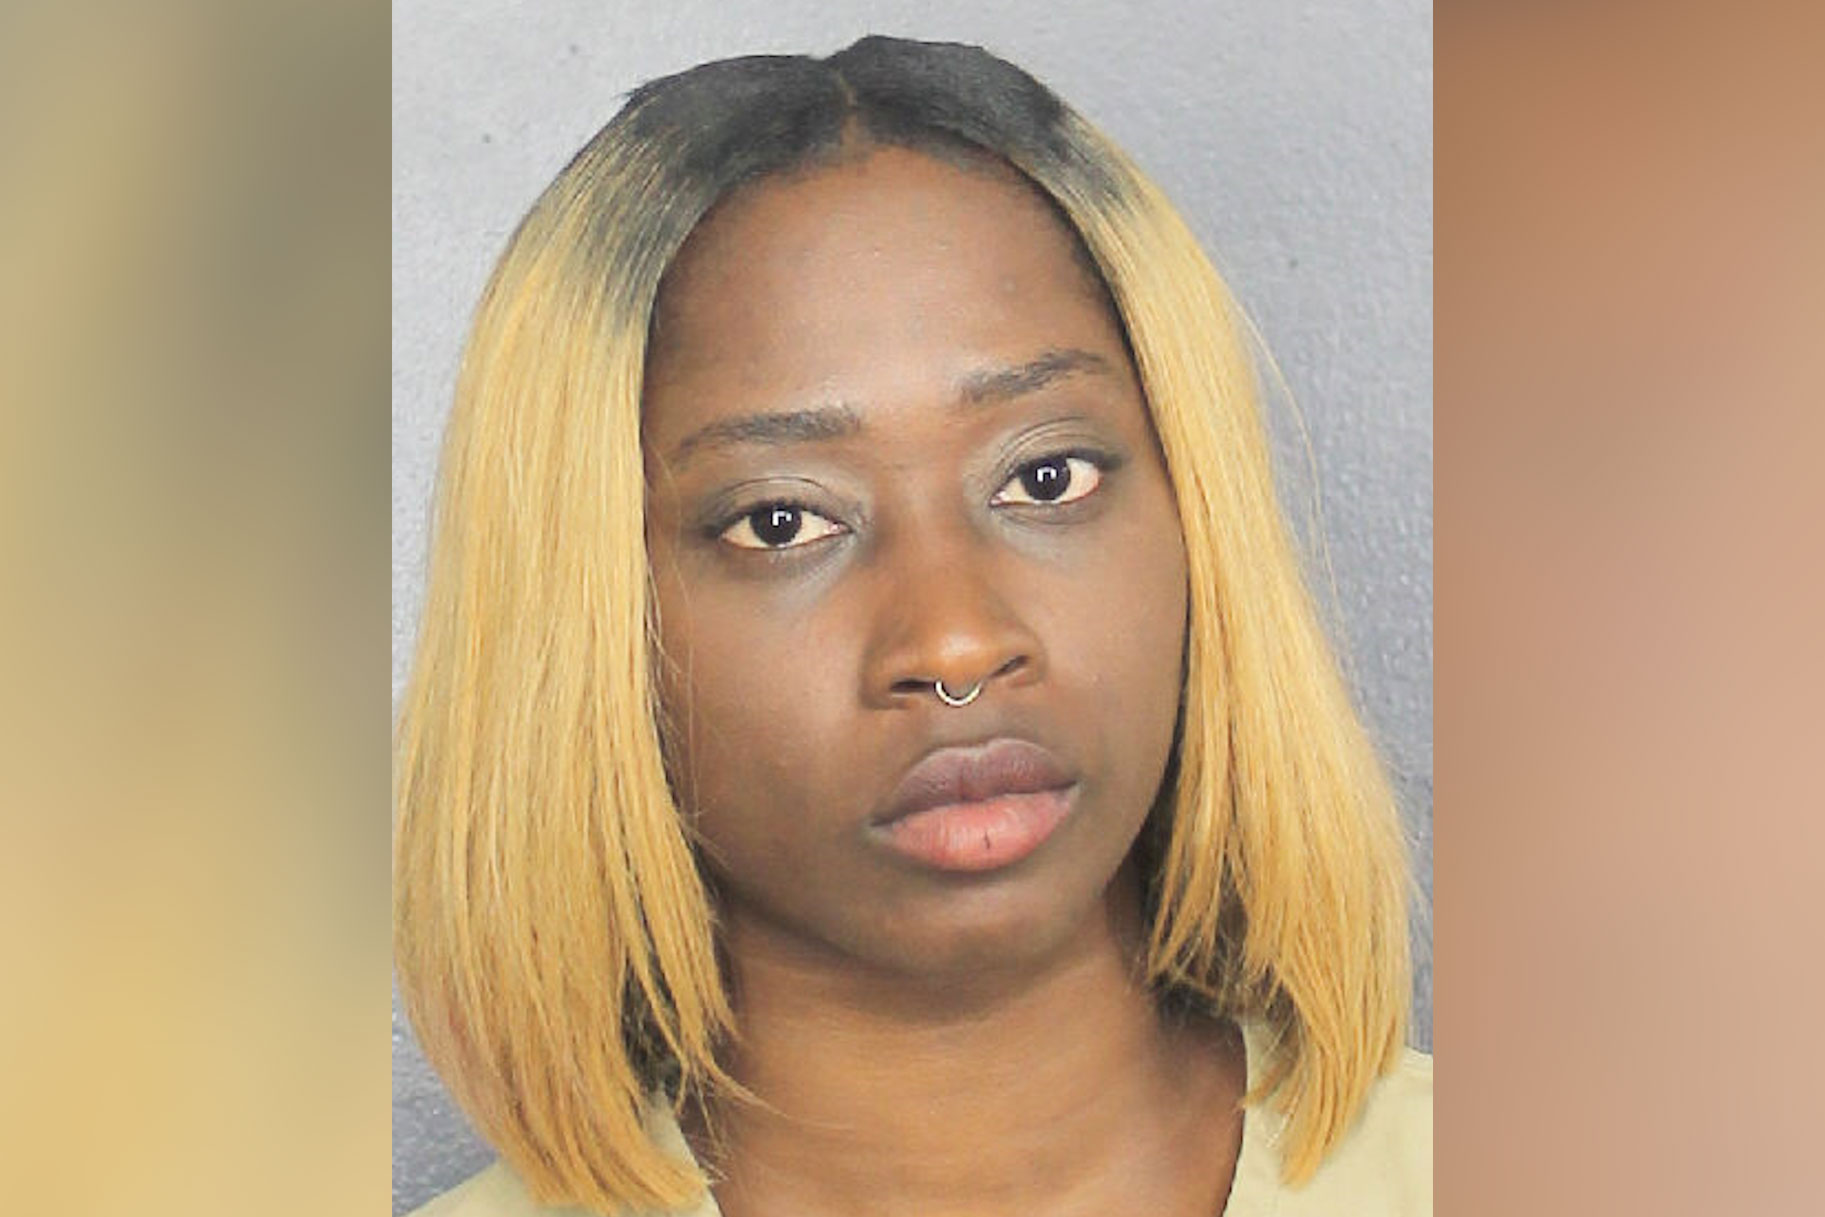 La mamma della Florida ha lasciato il bambino da solo per ore in macchina mentre lavorava allo Strip Club, dice la polizia